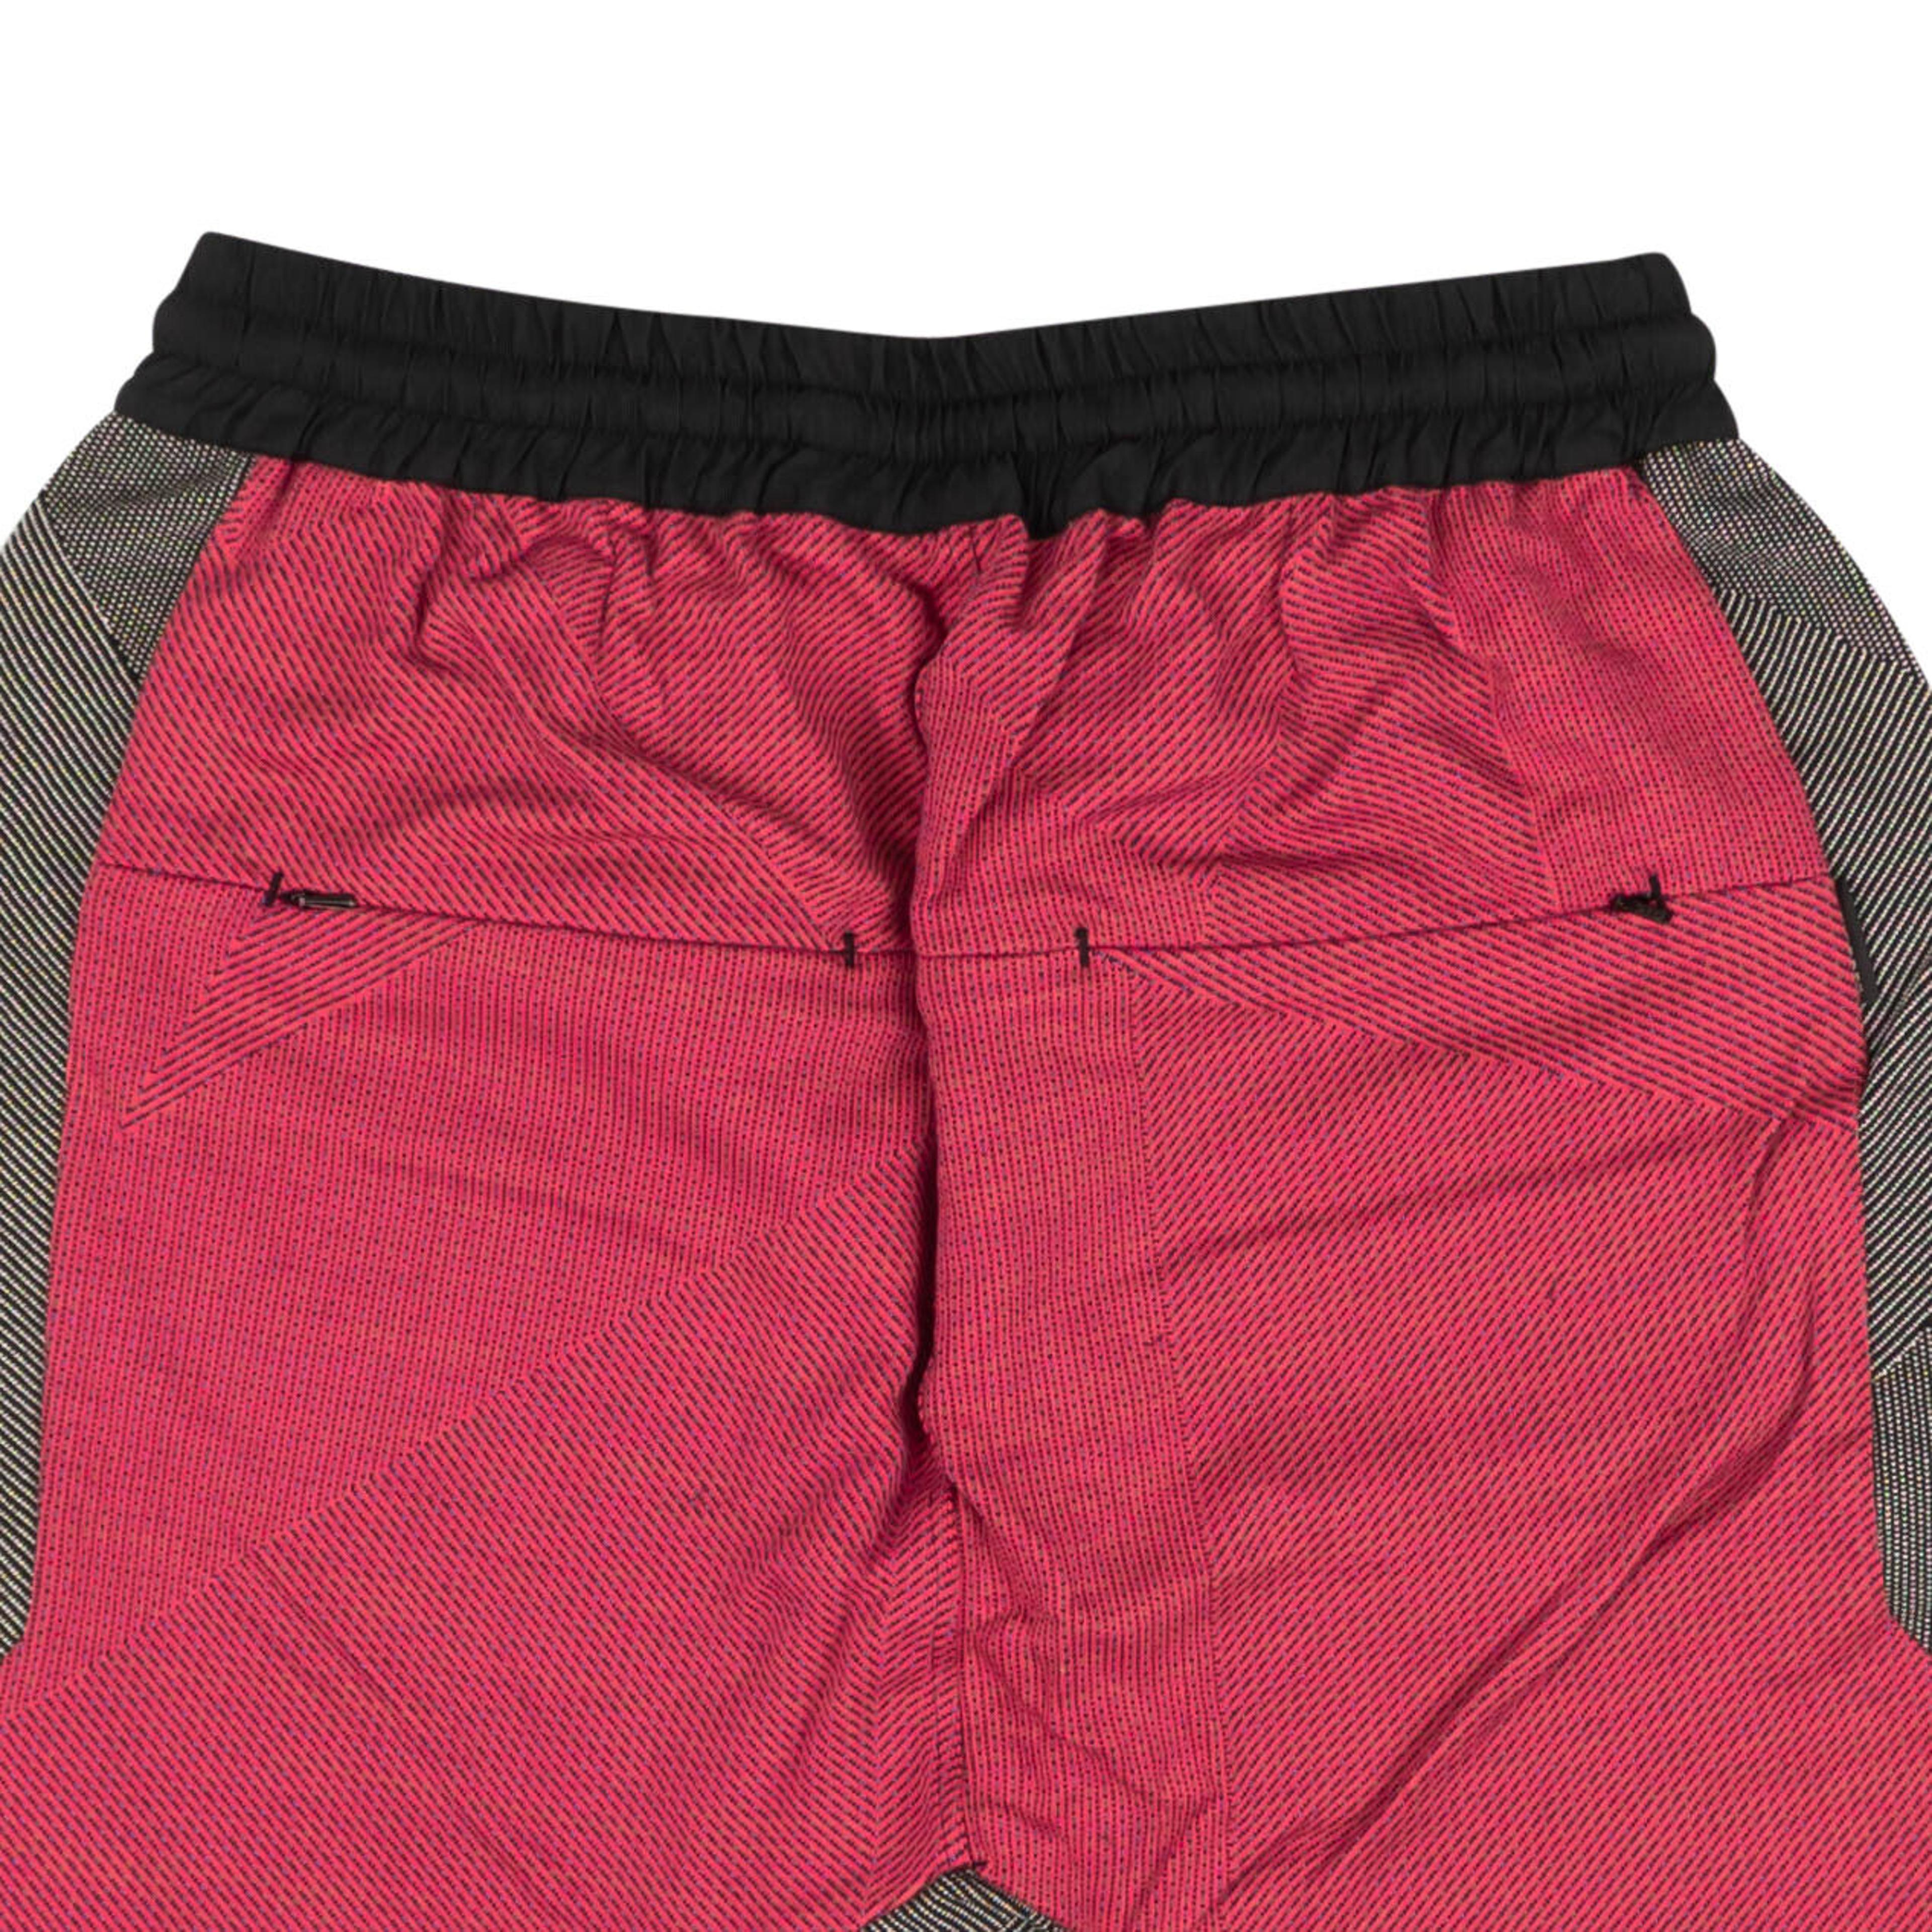 Alternate View 3 of Fuschia Woven B1 Shorts